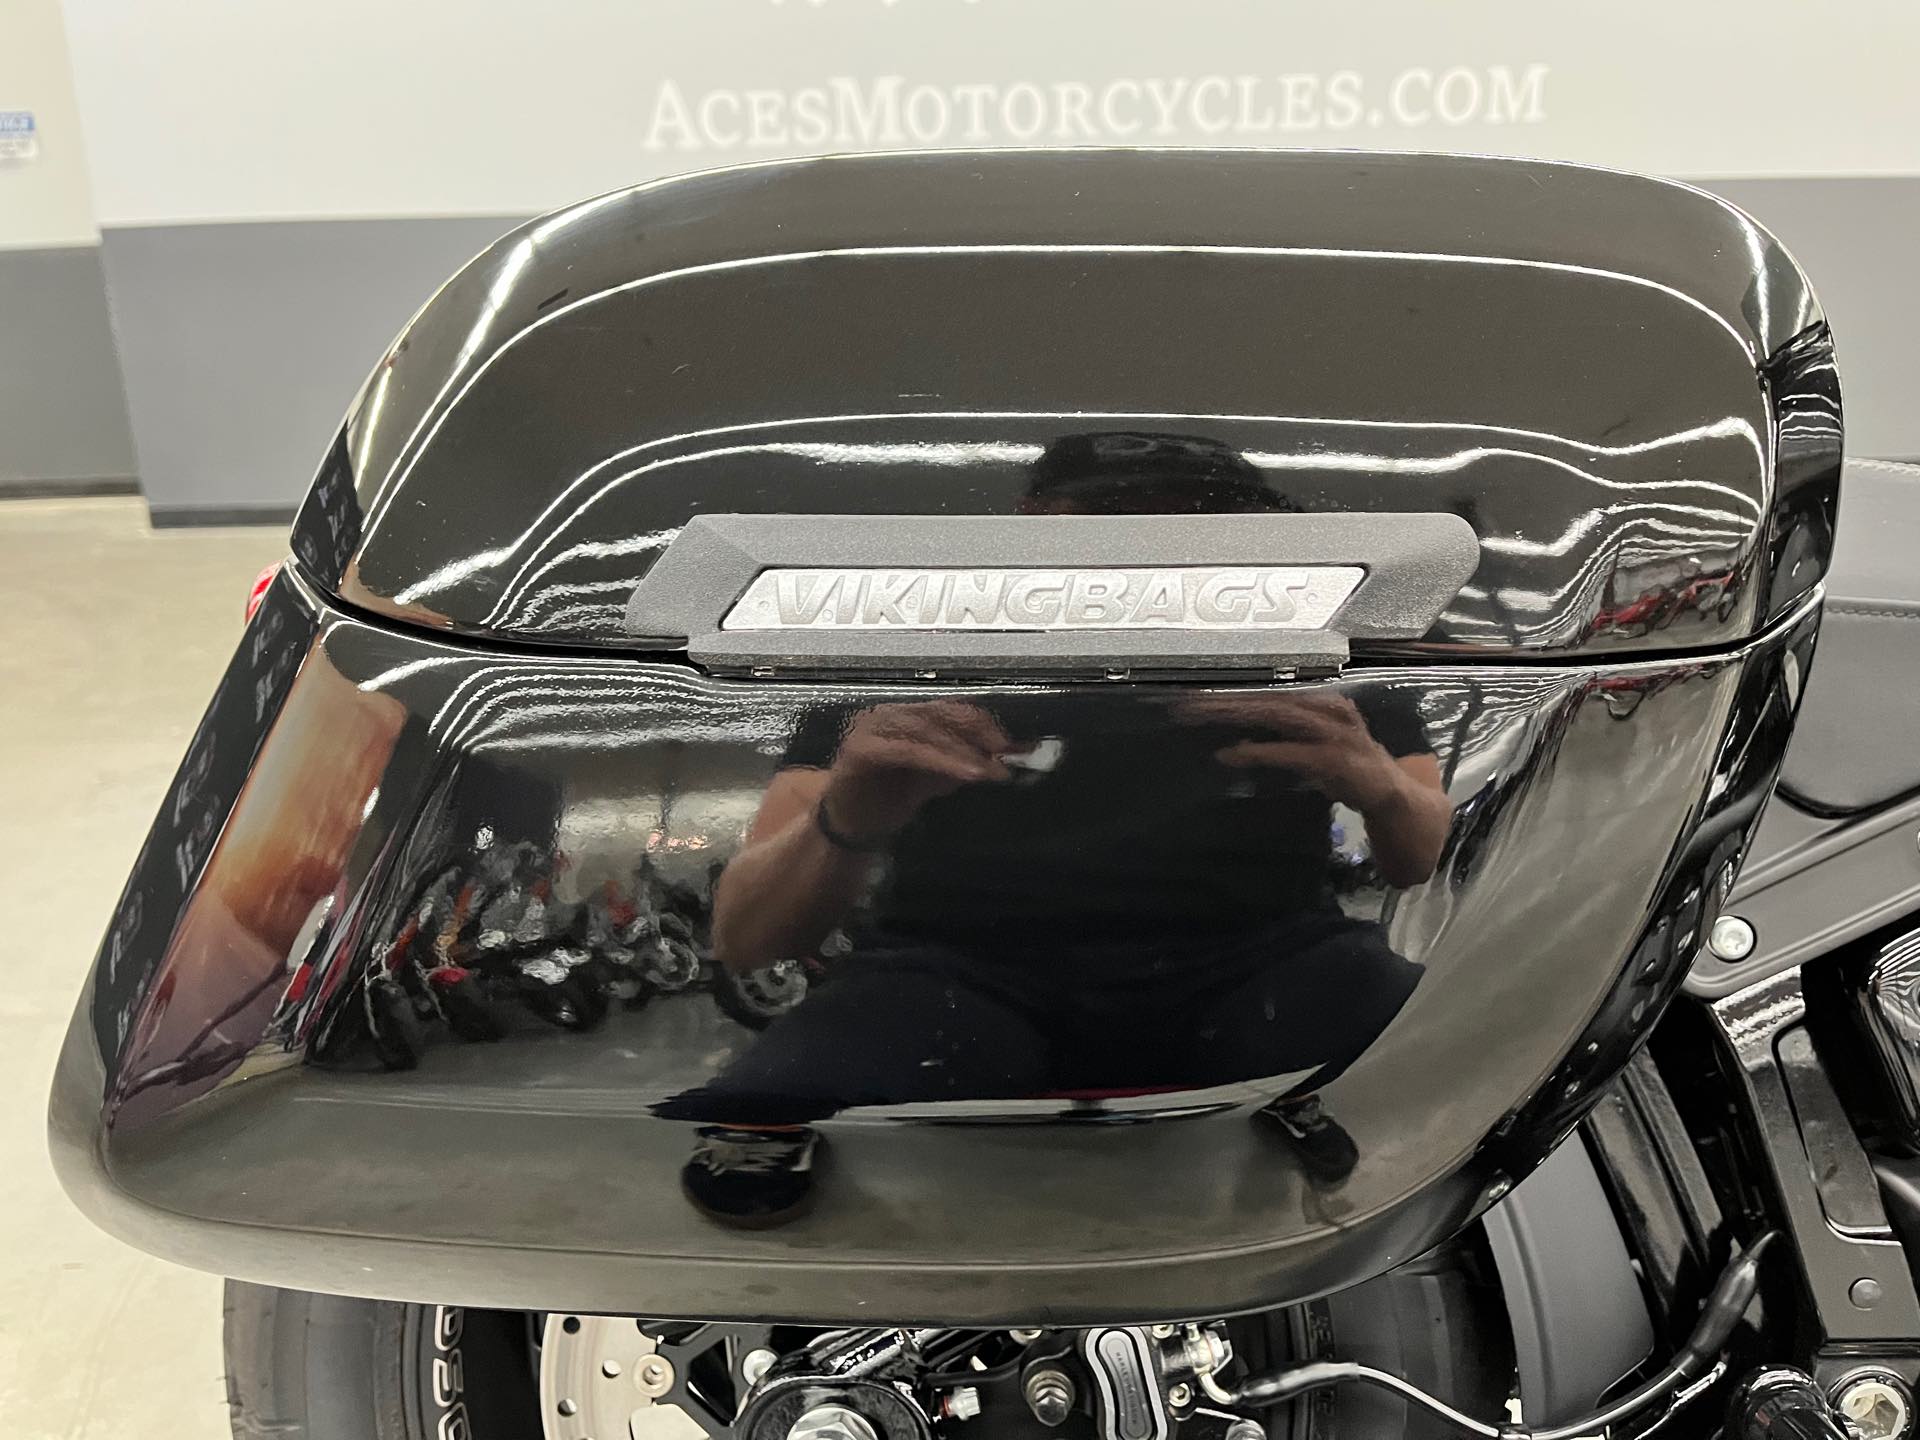 2022 Harley-Davidson Softail Fat Bob 114 at Aces Motorcycles - Denver